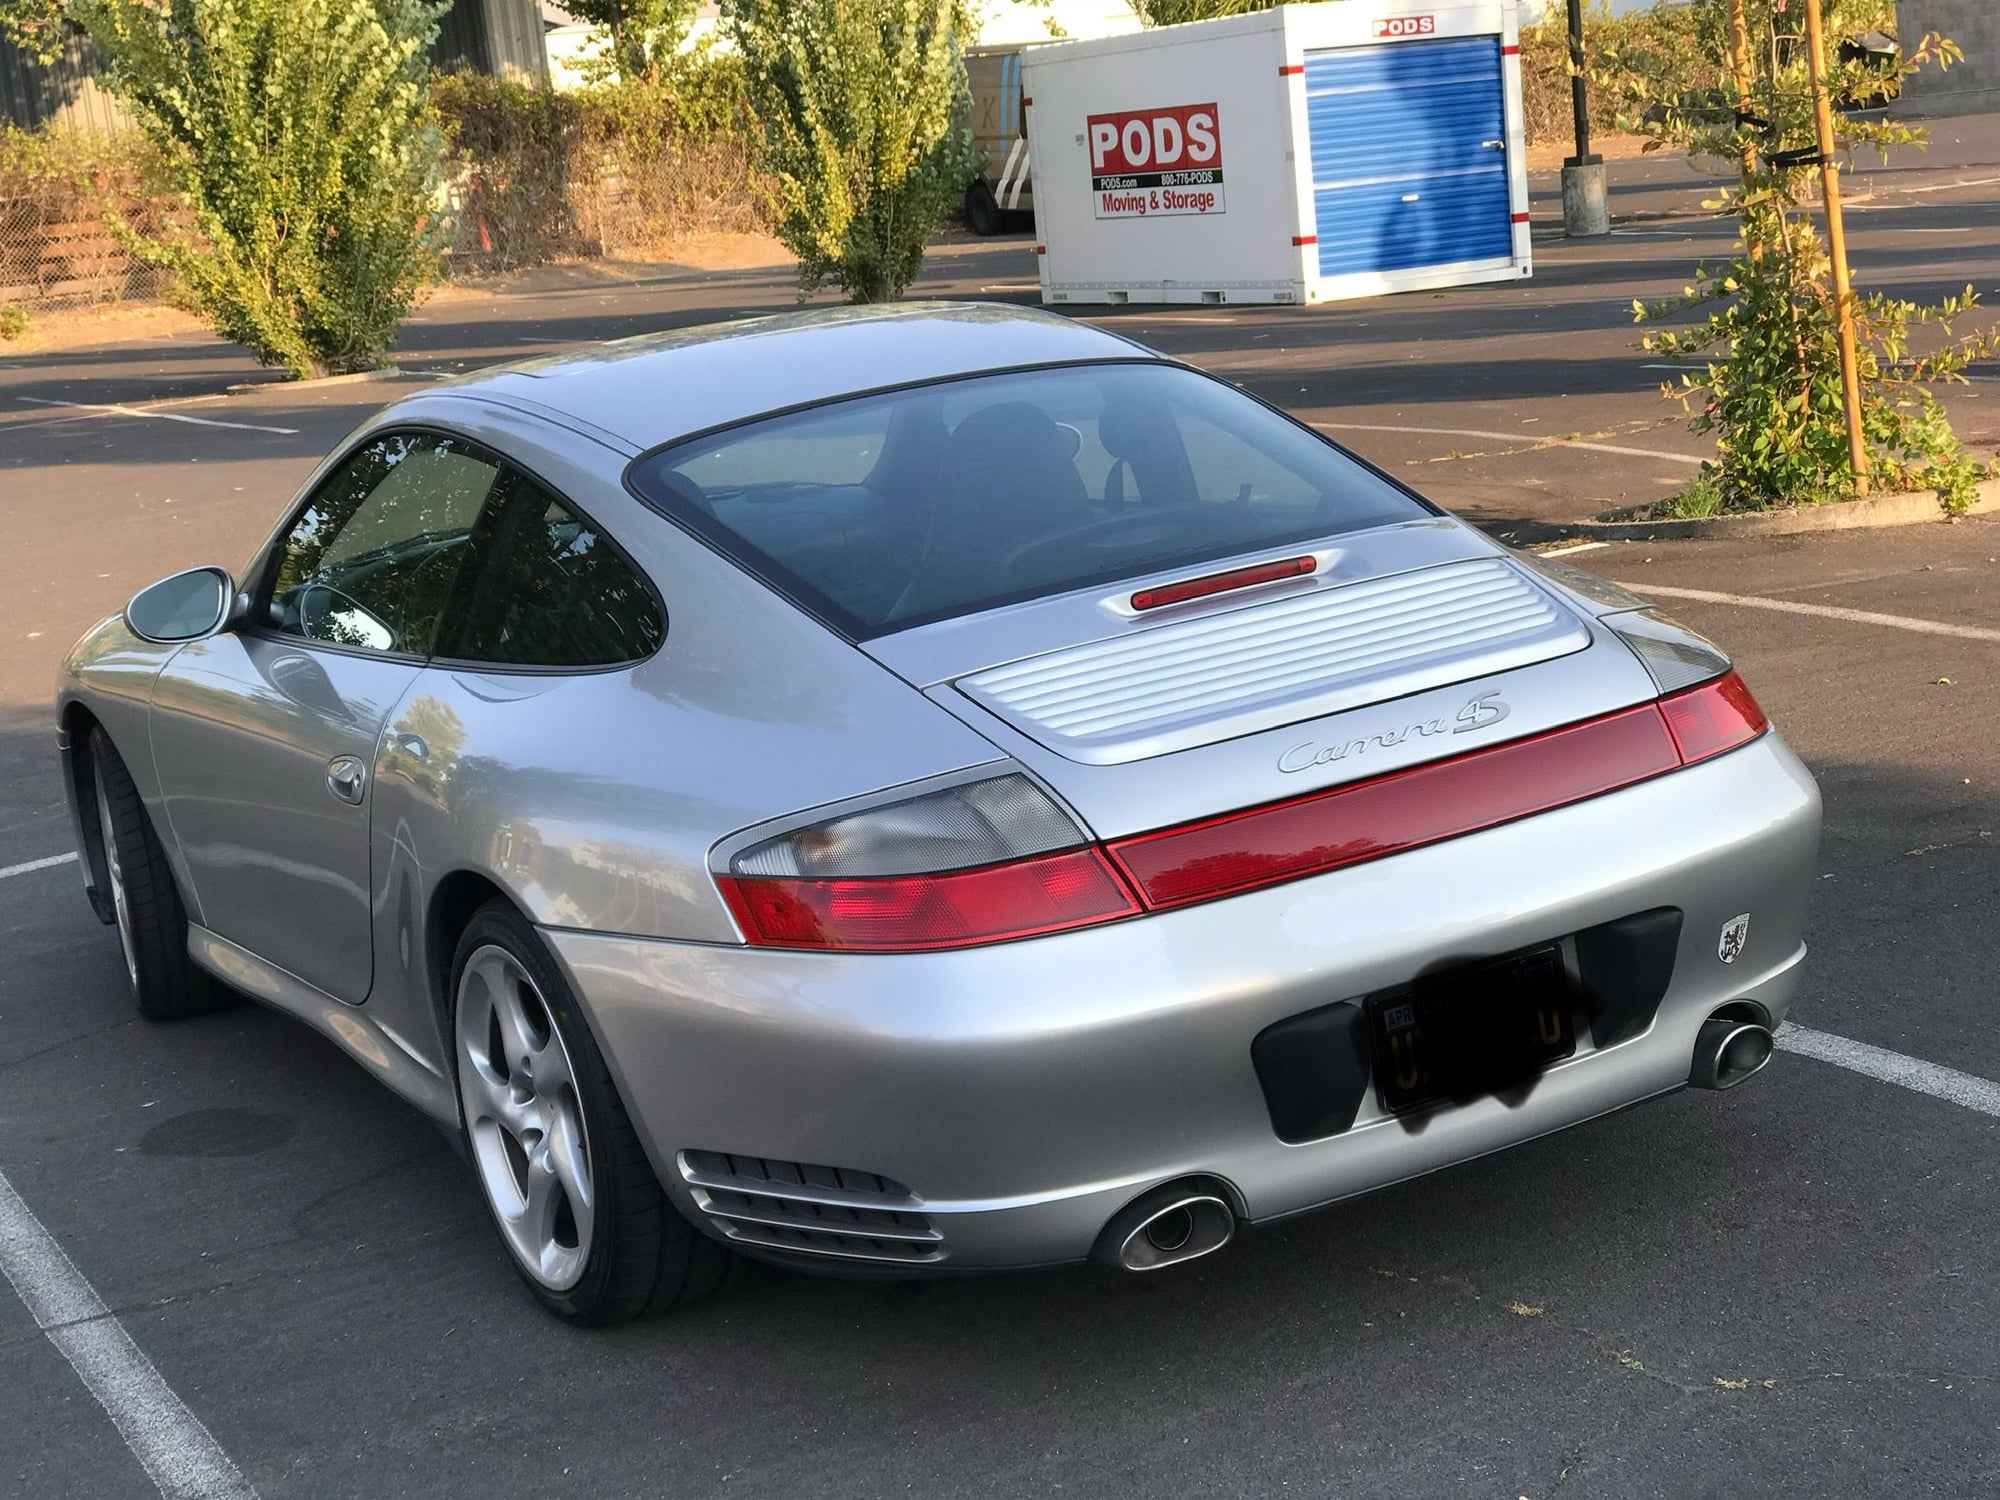 2002 Porsche 911 - 2002 Porsche 911 Carrera 4S with Blown Motor - Used - Petaluma, CA 94954, United States